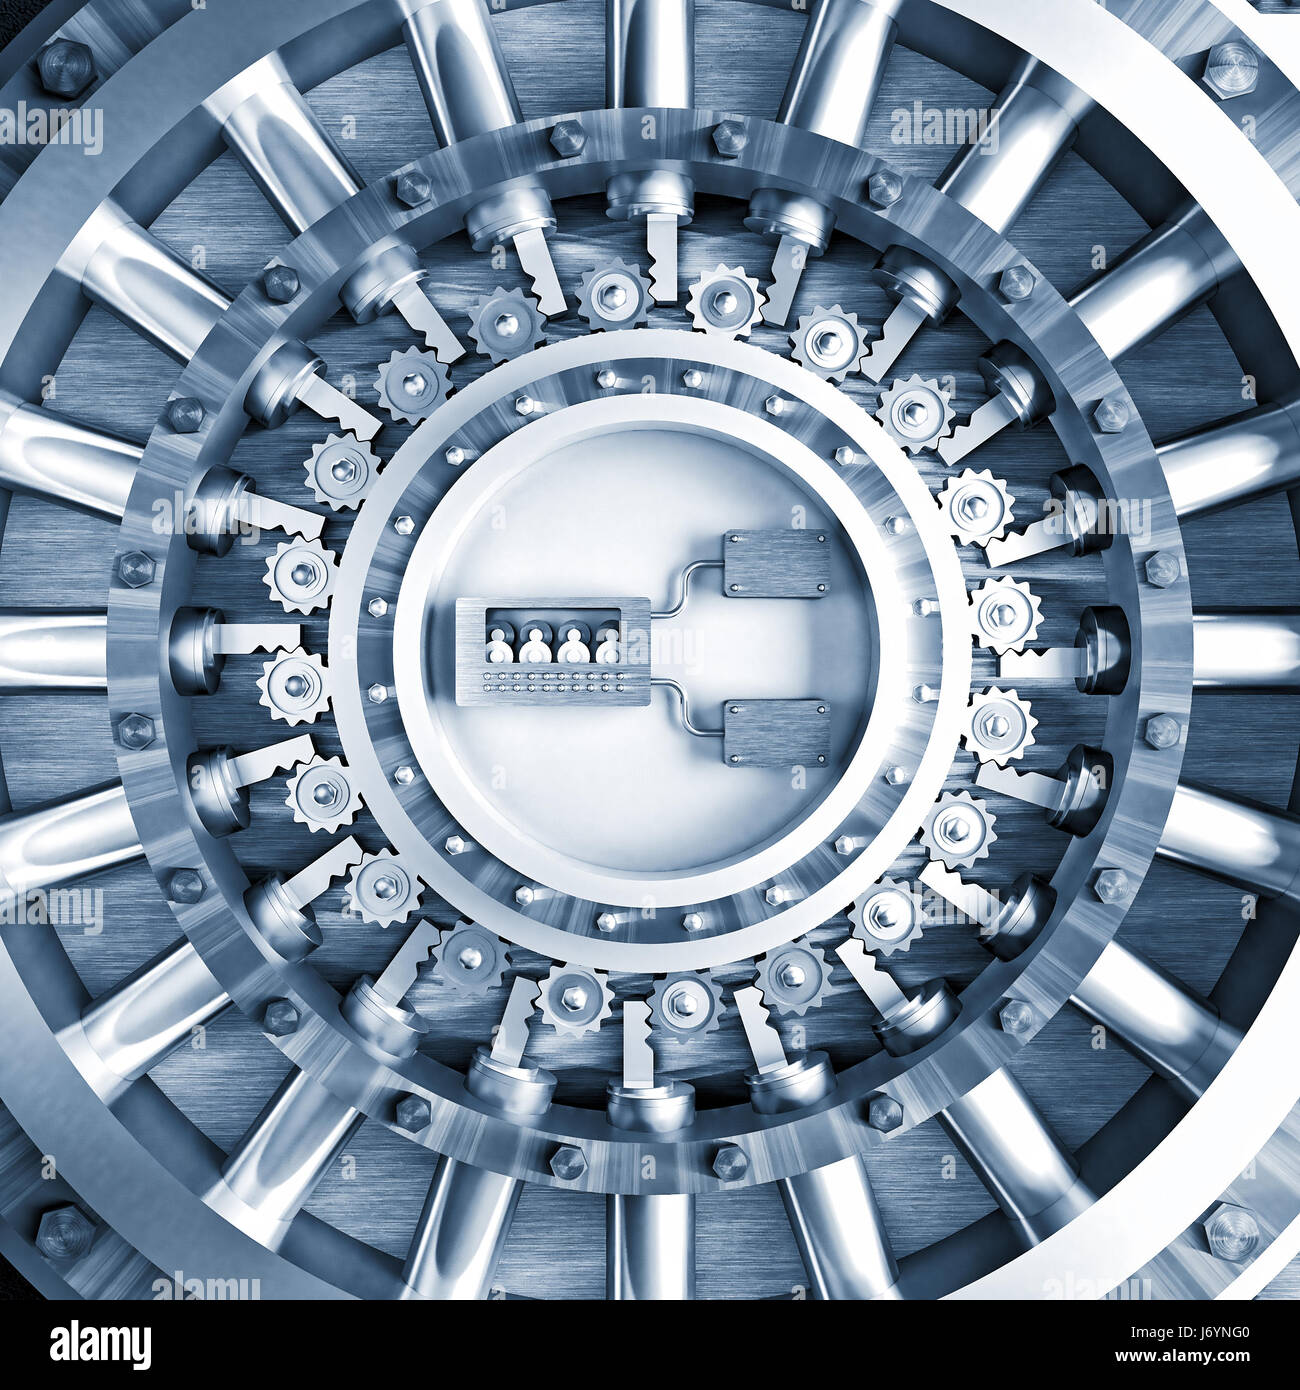 steel classic vault bank door 3d rendering image Stock Photo